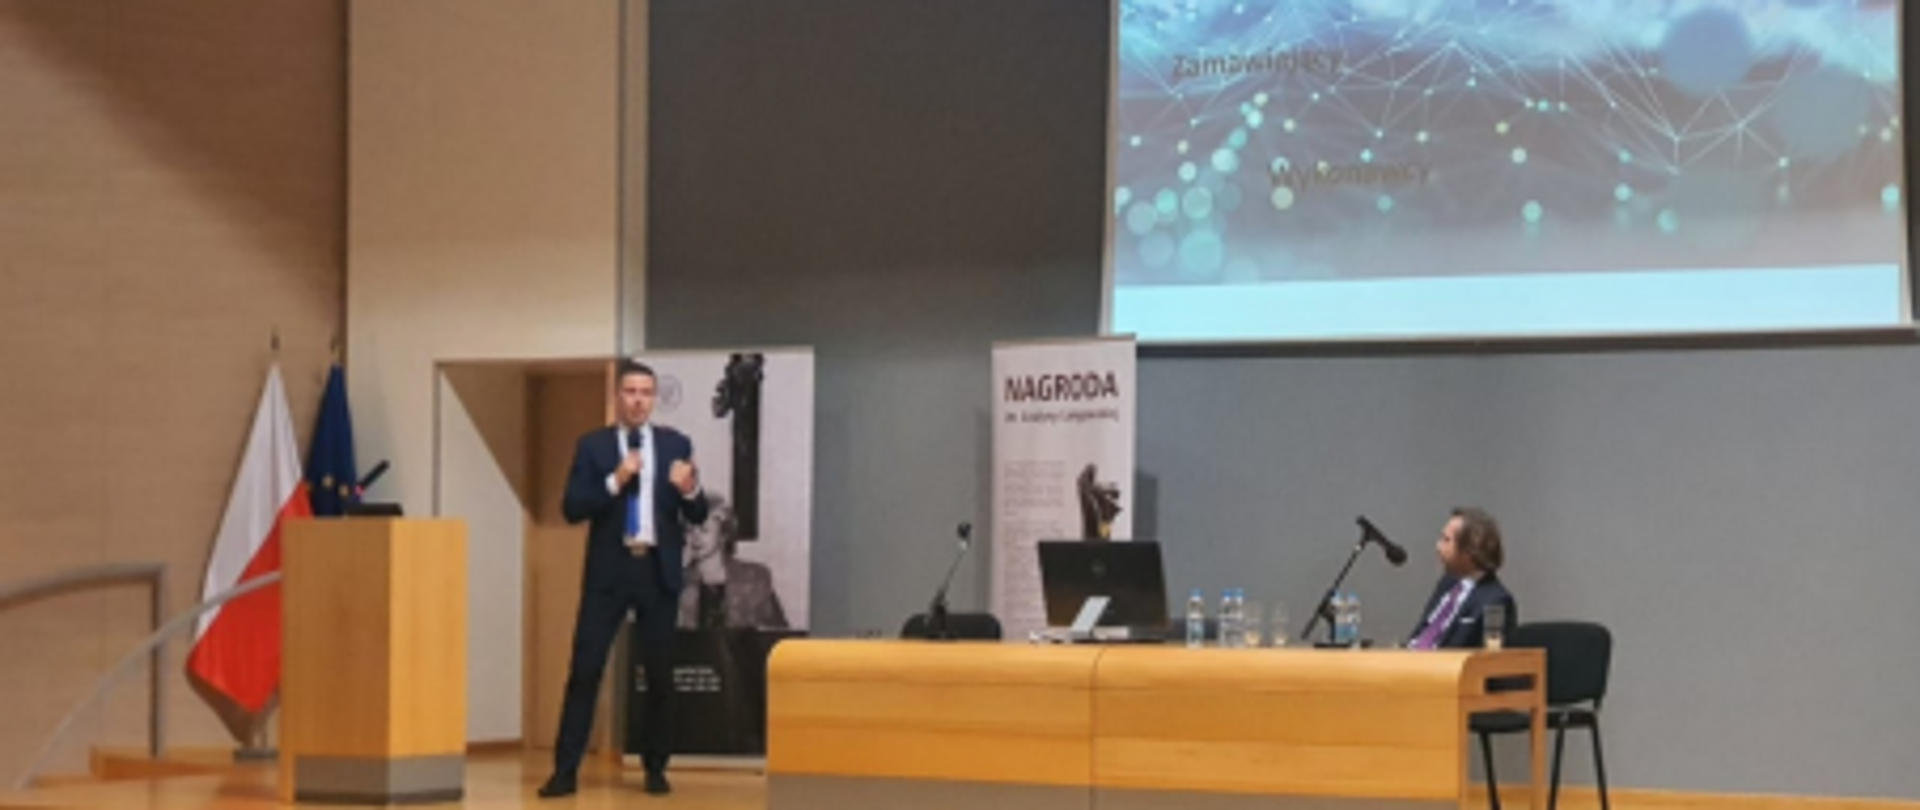 Zdjęcie z konferencji w Olsztynie. Na zdjęciu osoba prowadząca konferencję wraz z pokazem slajdów.